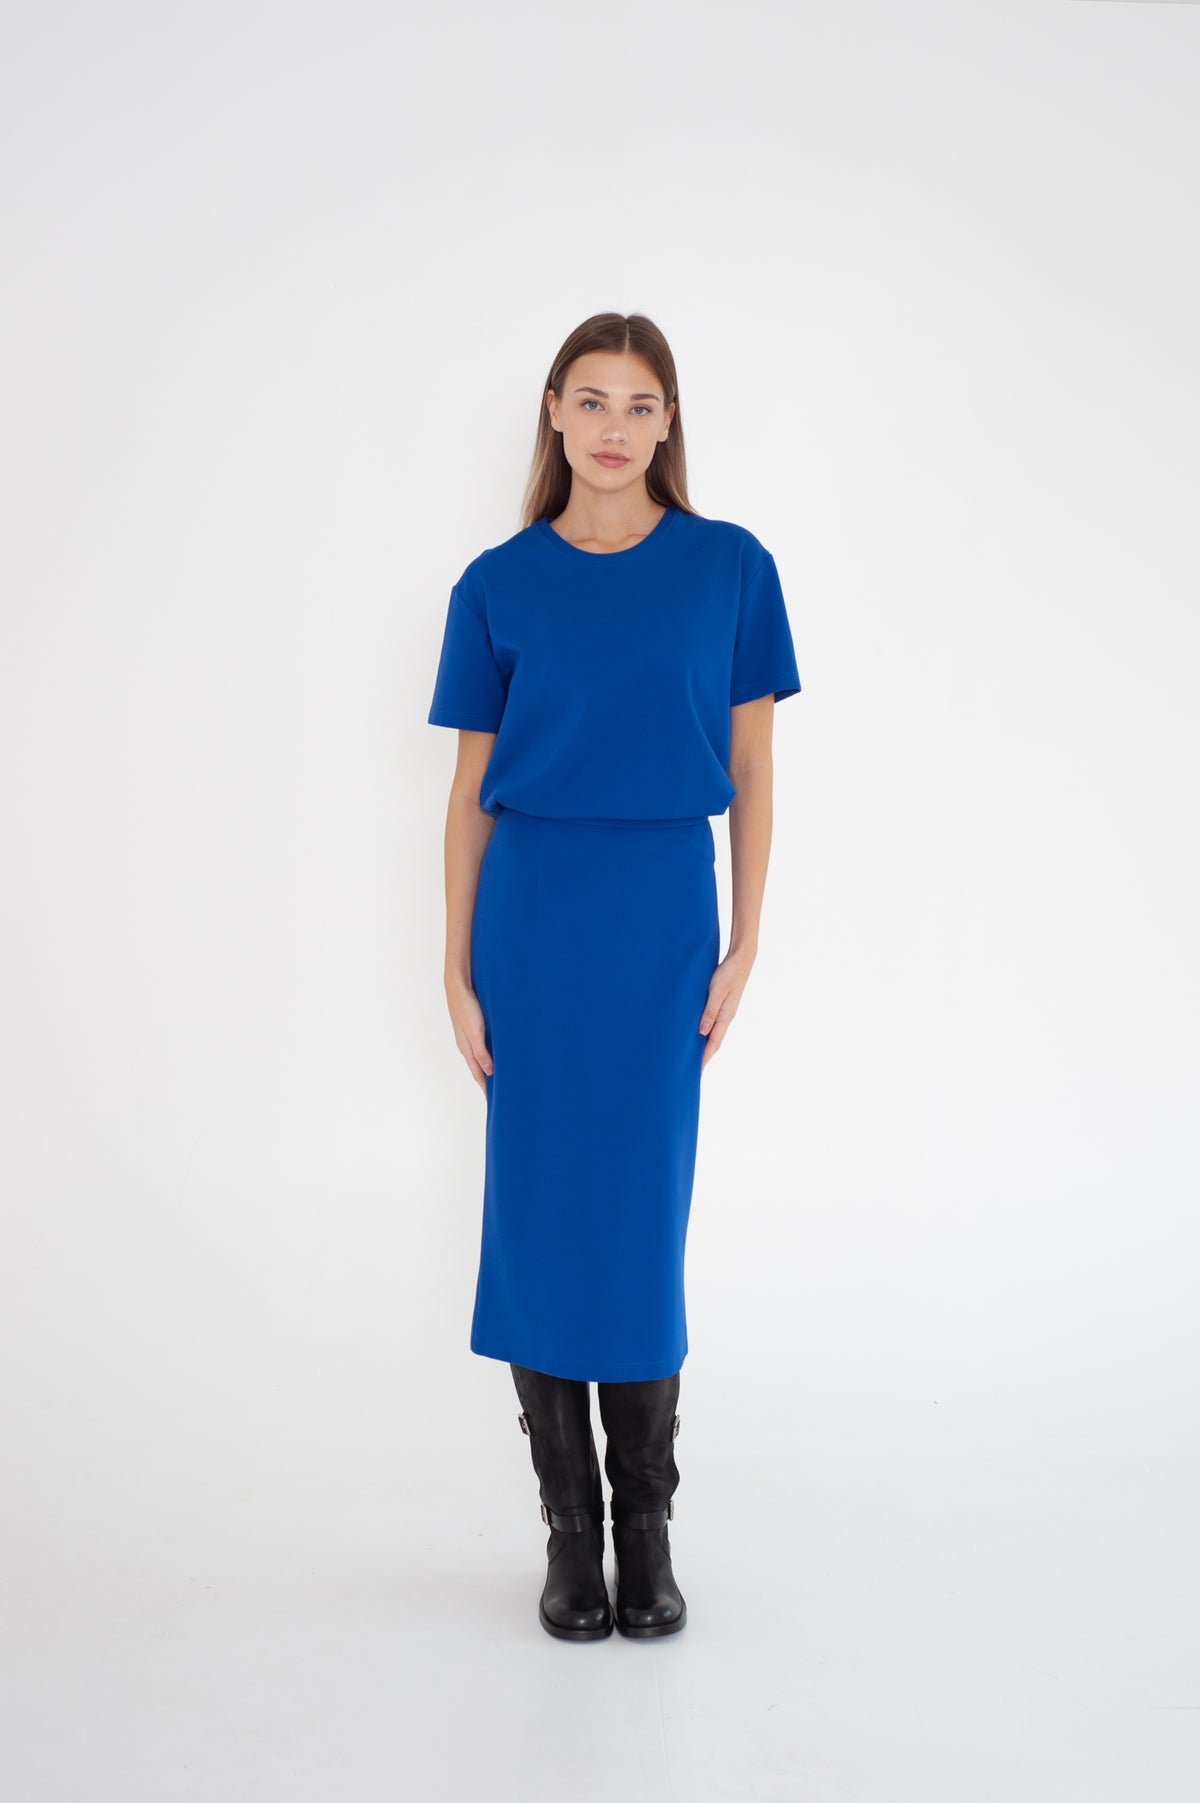 Bright blue midi skirt